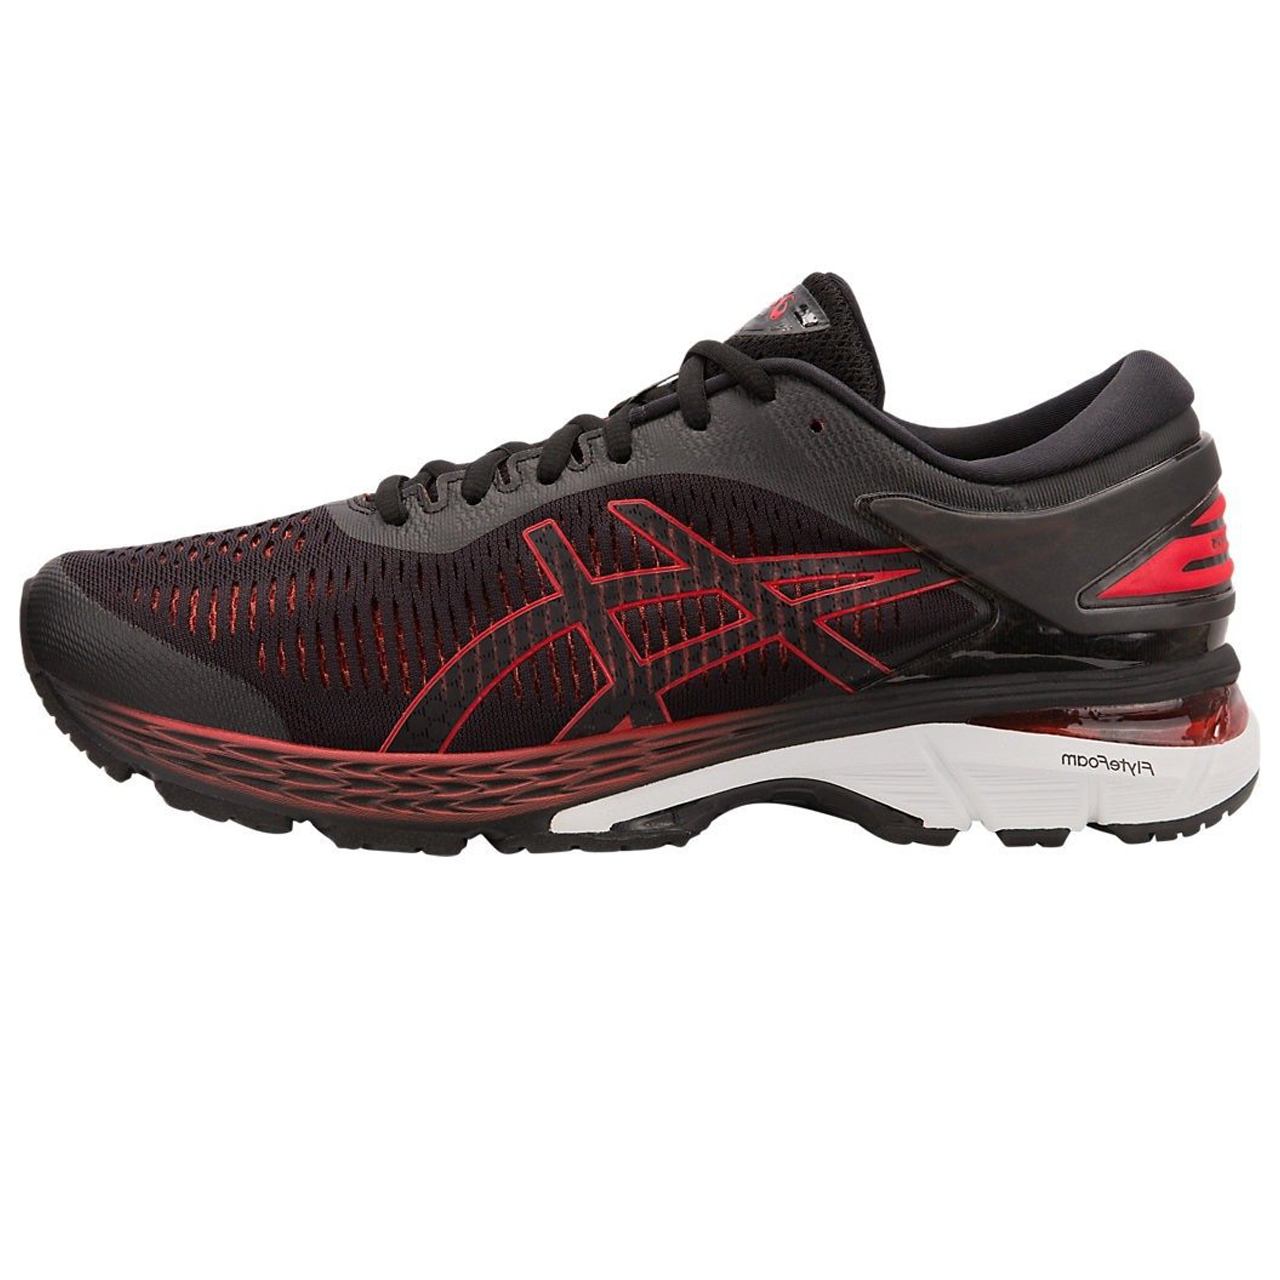  کفش مخصوص دویدن مردانه اسیکس مدل kayano کد T8767-897